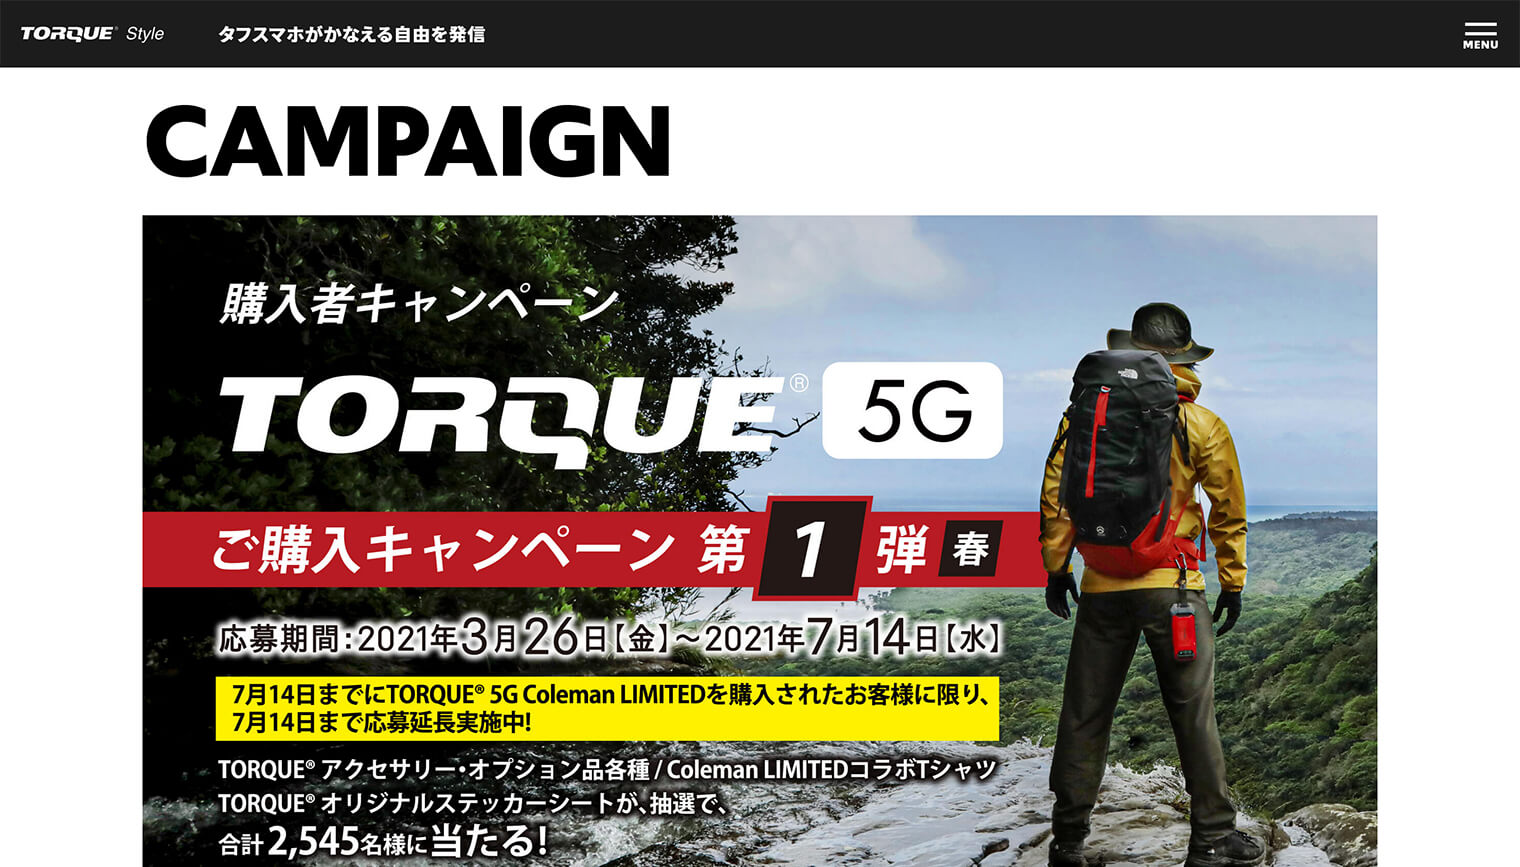 京セラ株式会社様（TORQUE® 5G キャンペーン）